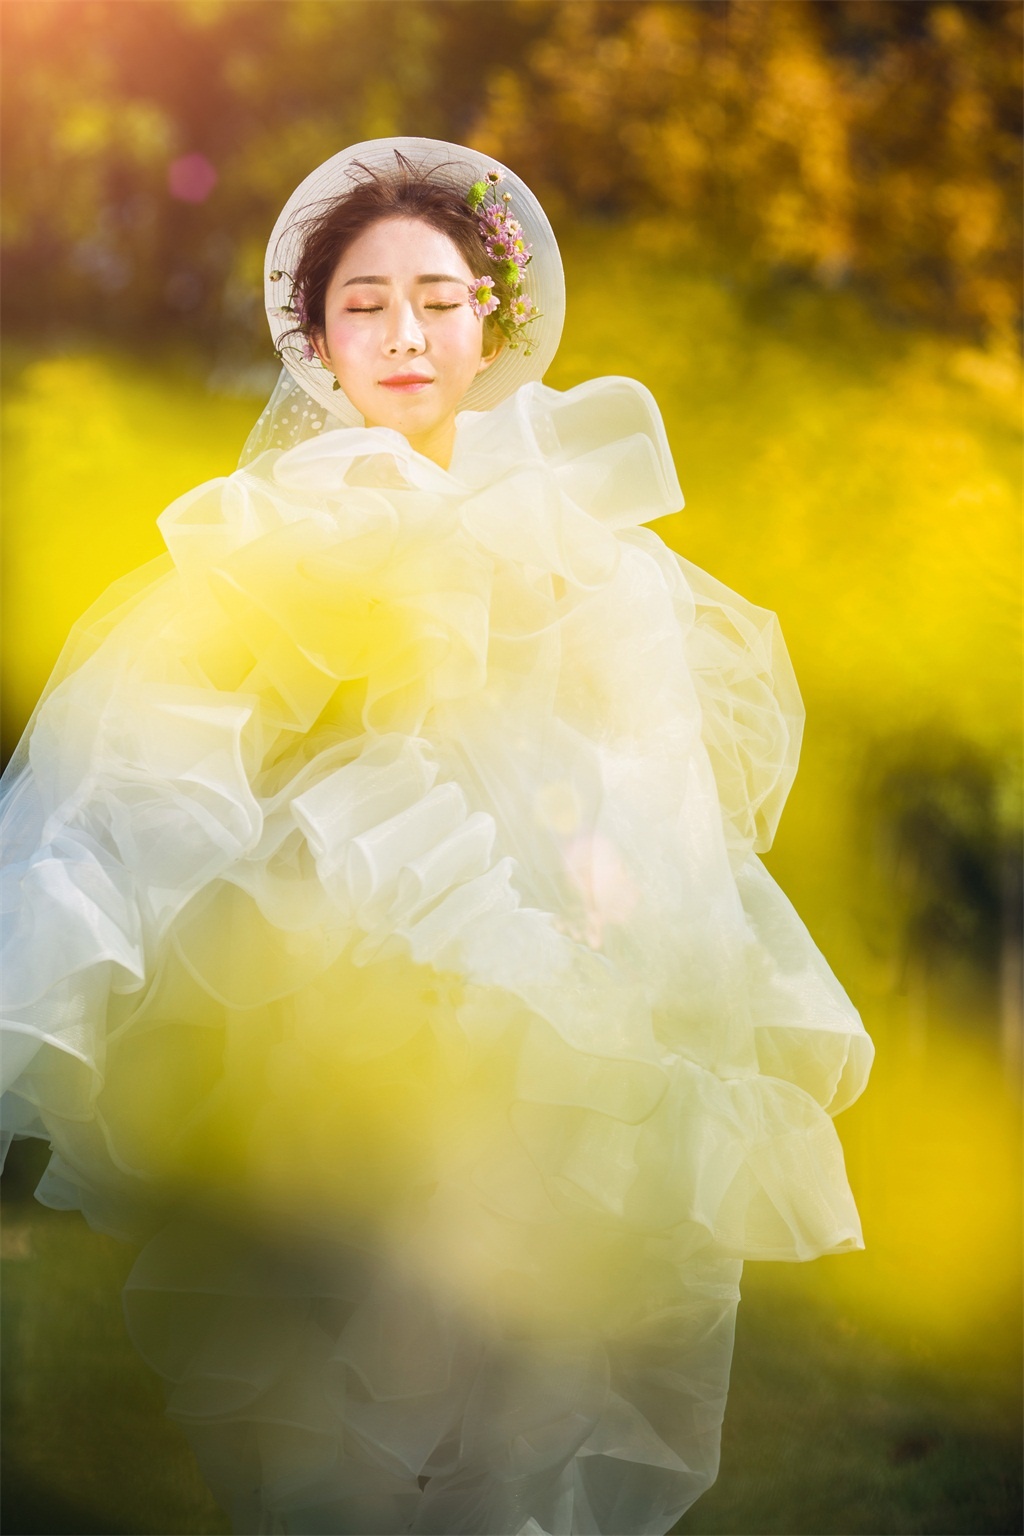 桂林婚纱摄影图片欣赏|桂林婚纱照样片图片